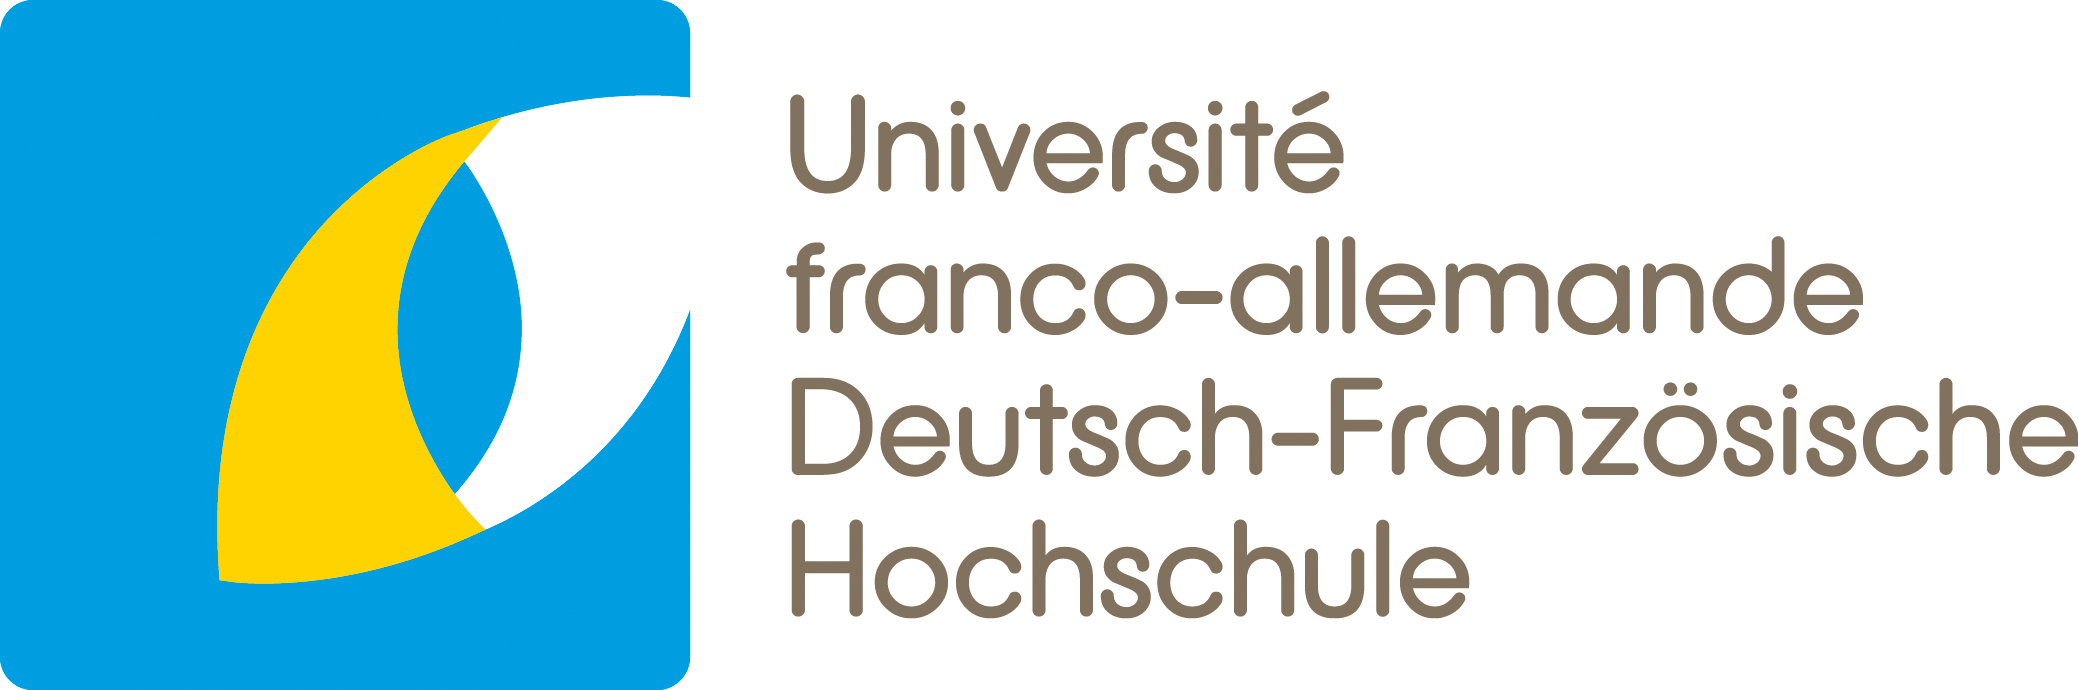 German-French University - Université Franco Allemande - Deutsch Franzosische Hochschule